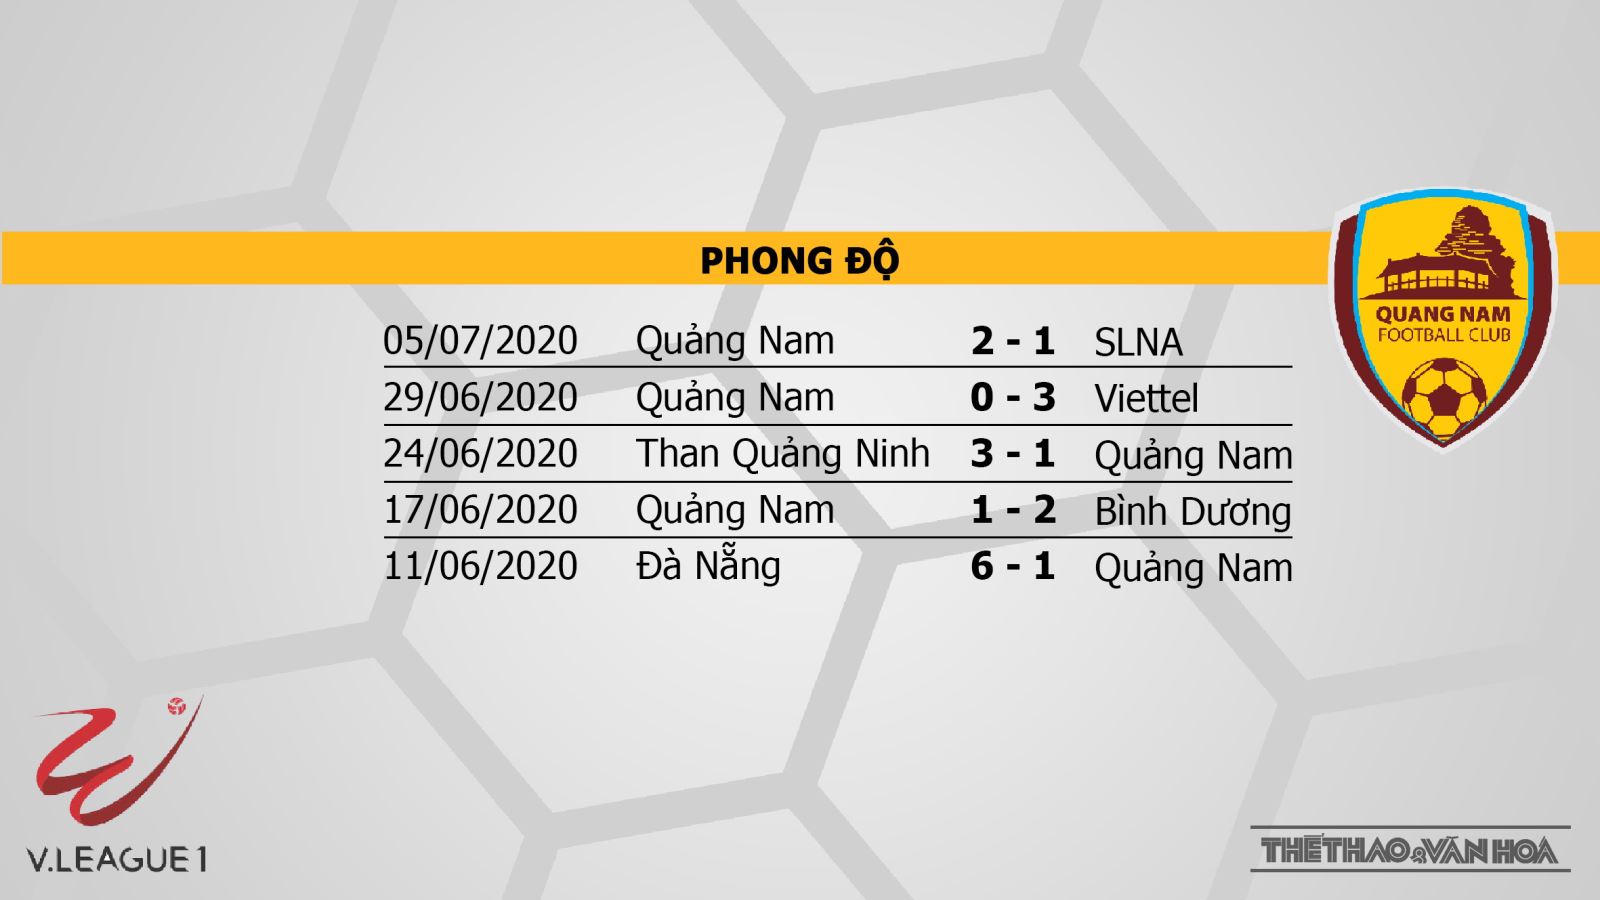 Nam Định vs Quảng Nam, Nam Định, Quảng Nam, nhận định bóng đá, kèo bóng đá, trực tiếp Nam Định đấu với Quảng Nam, V-League